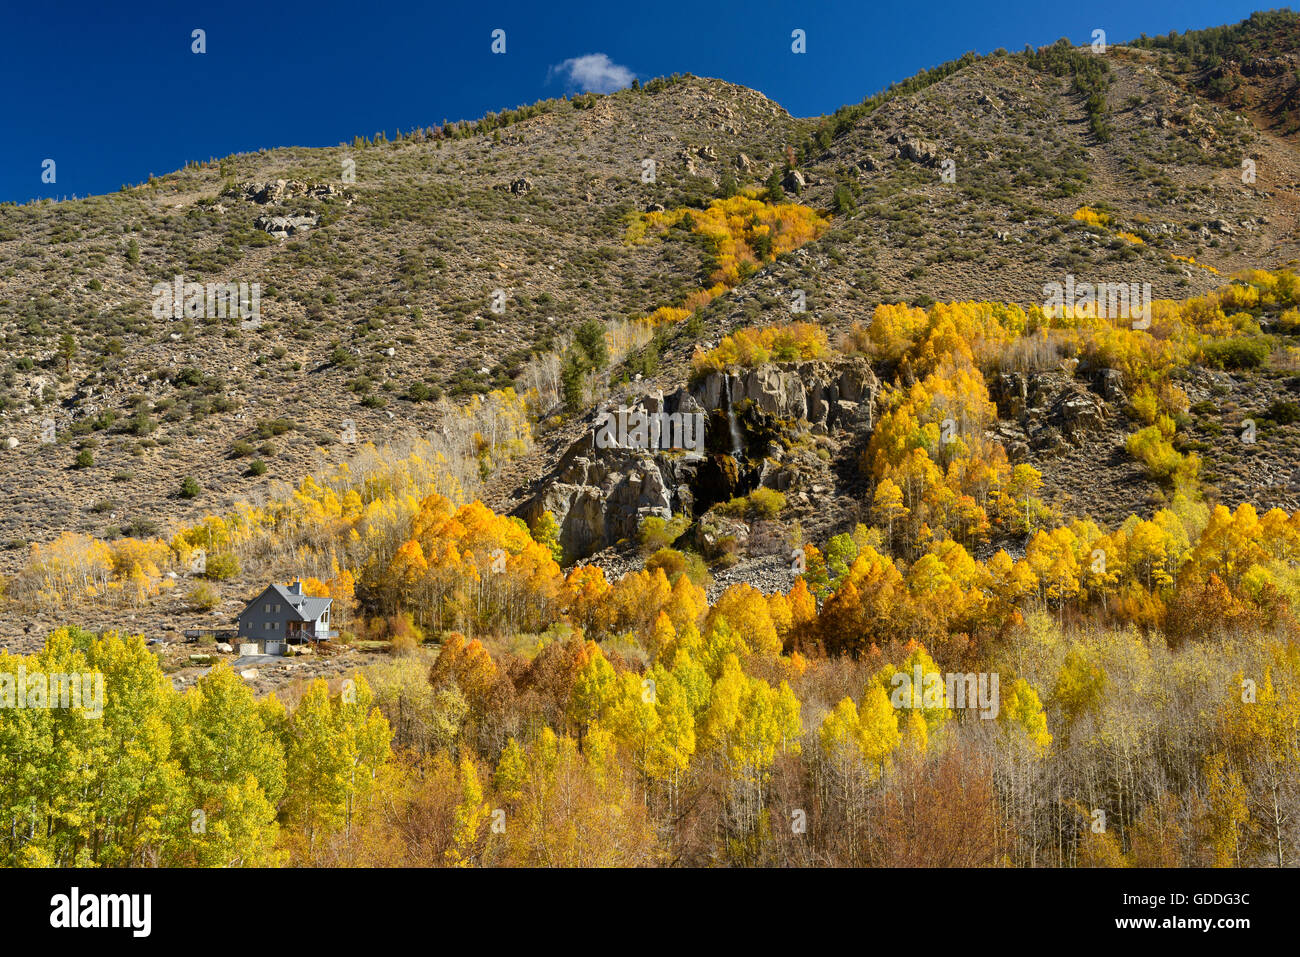 USA,California,Eastern Sierra,évêque,évêque creek feuillage,automne,automne,montagne, Banque D'Images